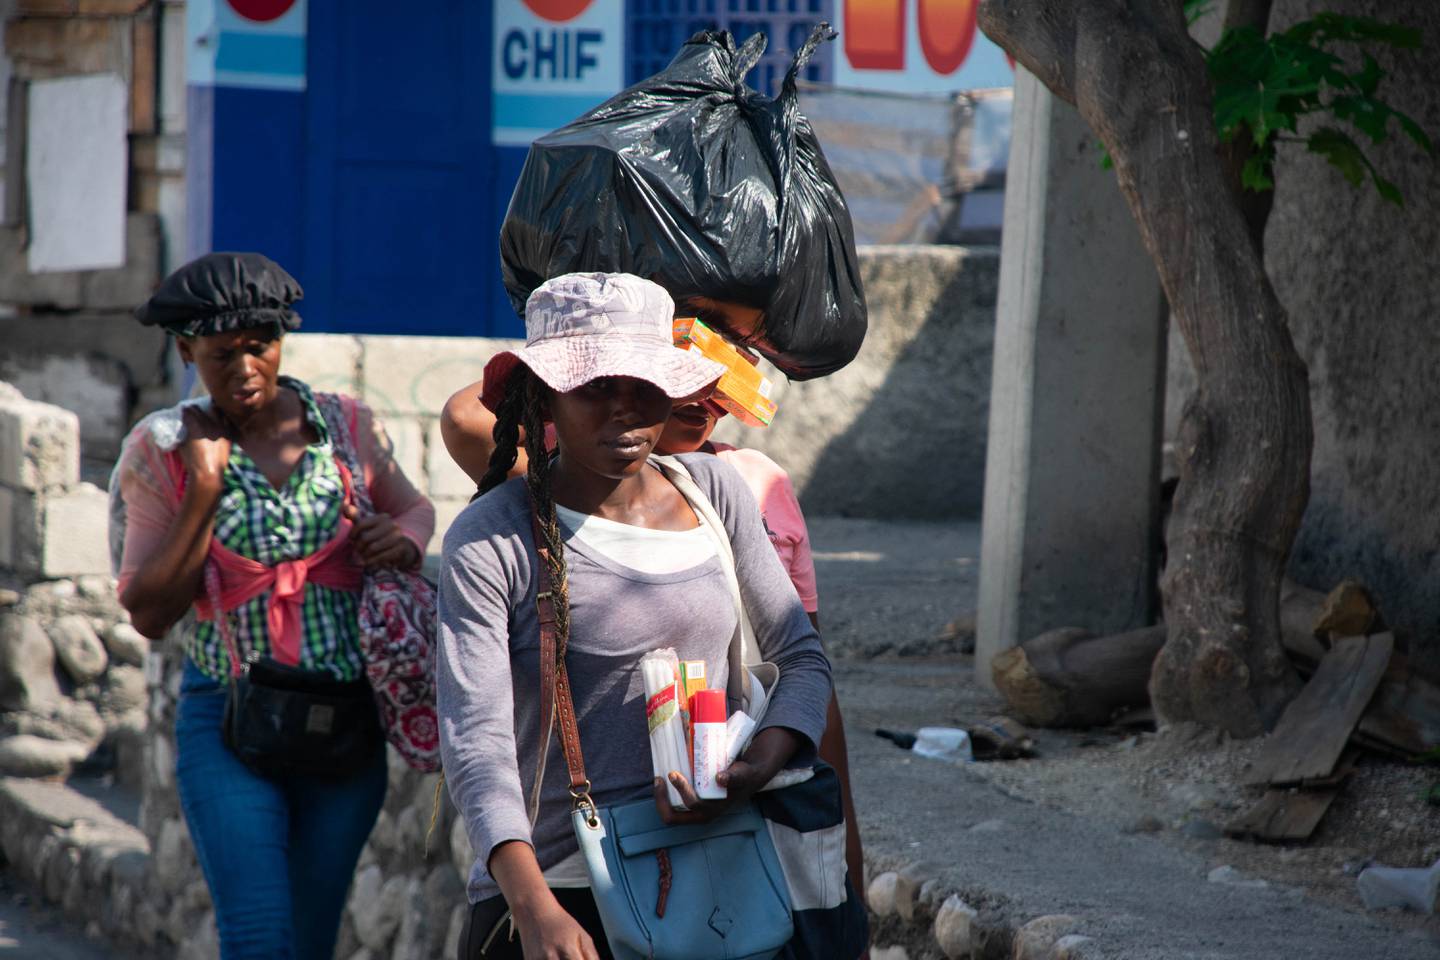 Los vendedores ambulantes abandonan el área después de escuchar disparos entre pandillas y policías, en Puerto Príncipe.